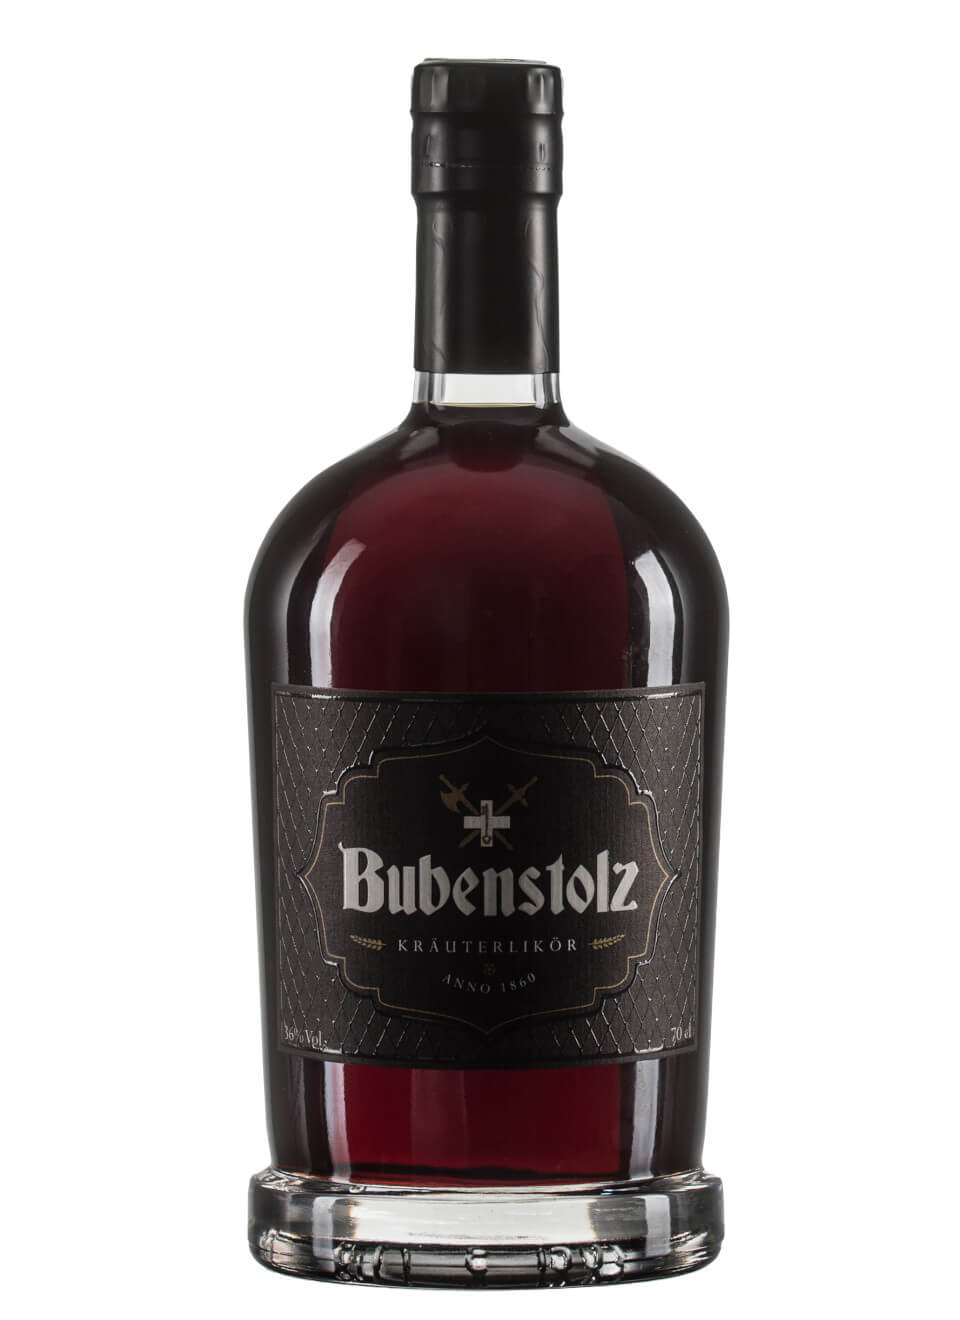  Bubenstolz Anno 1860 Kräuterlikör Flasche 1 x 0,7 l 